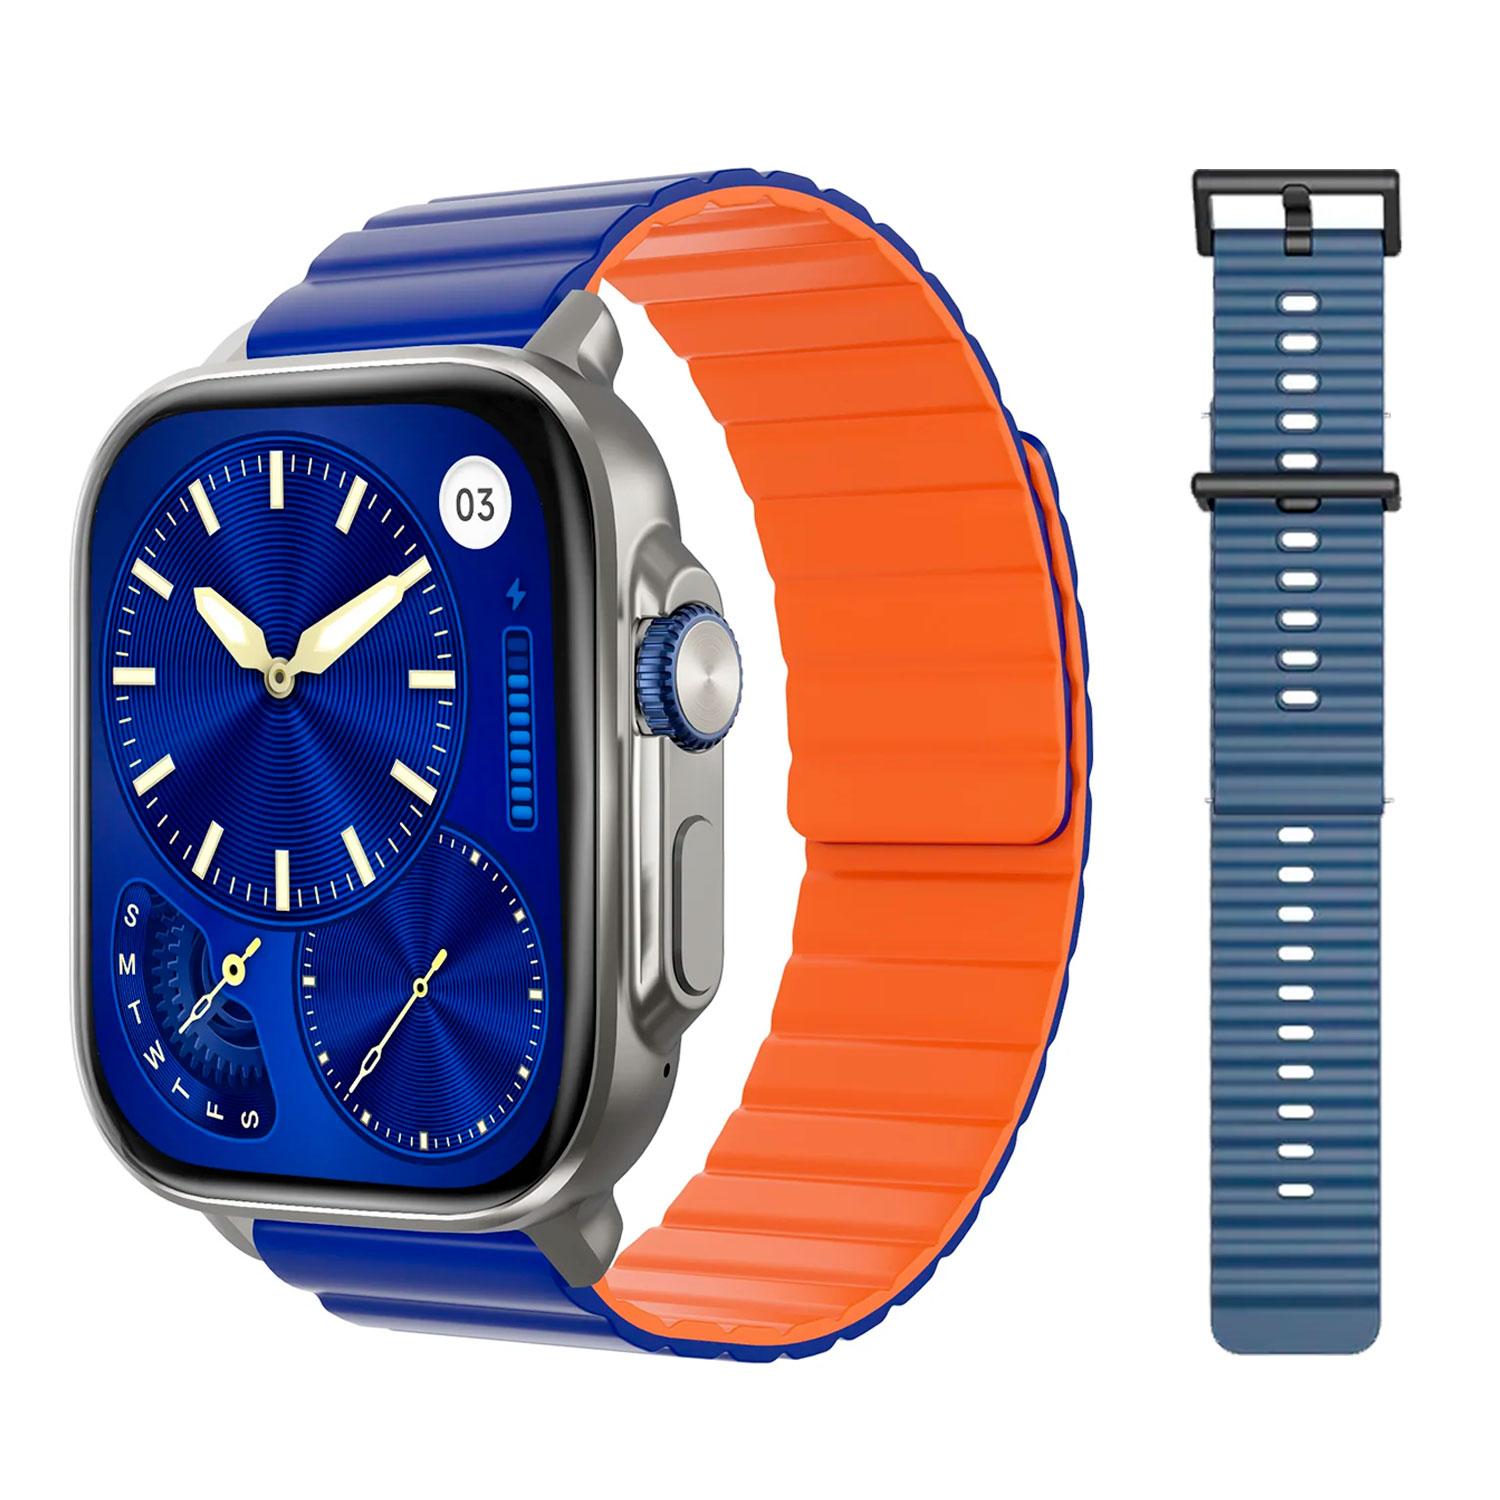 Smartwatch Udfine Watch Gear Alexa - Azul
